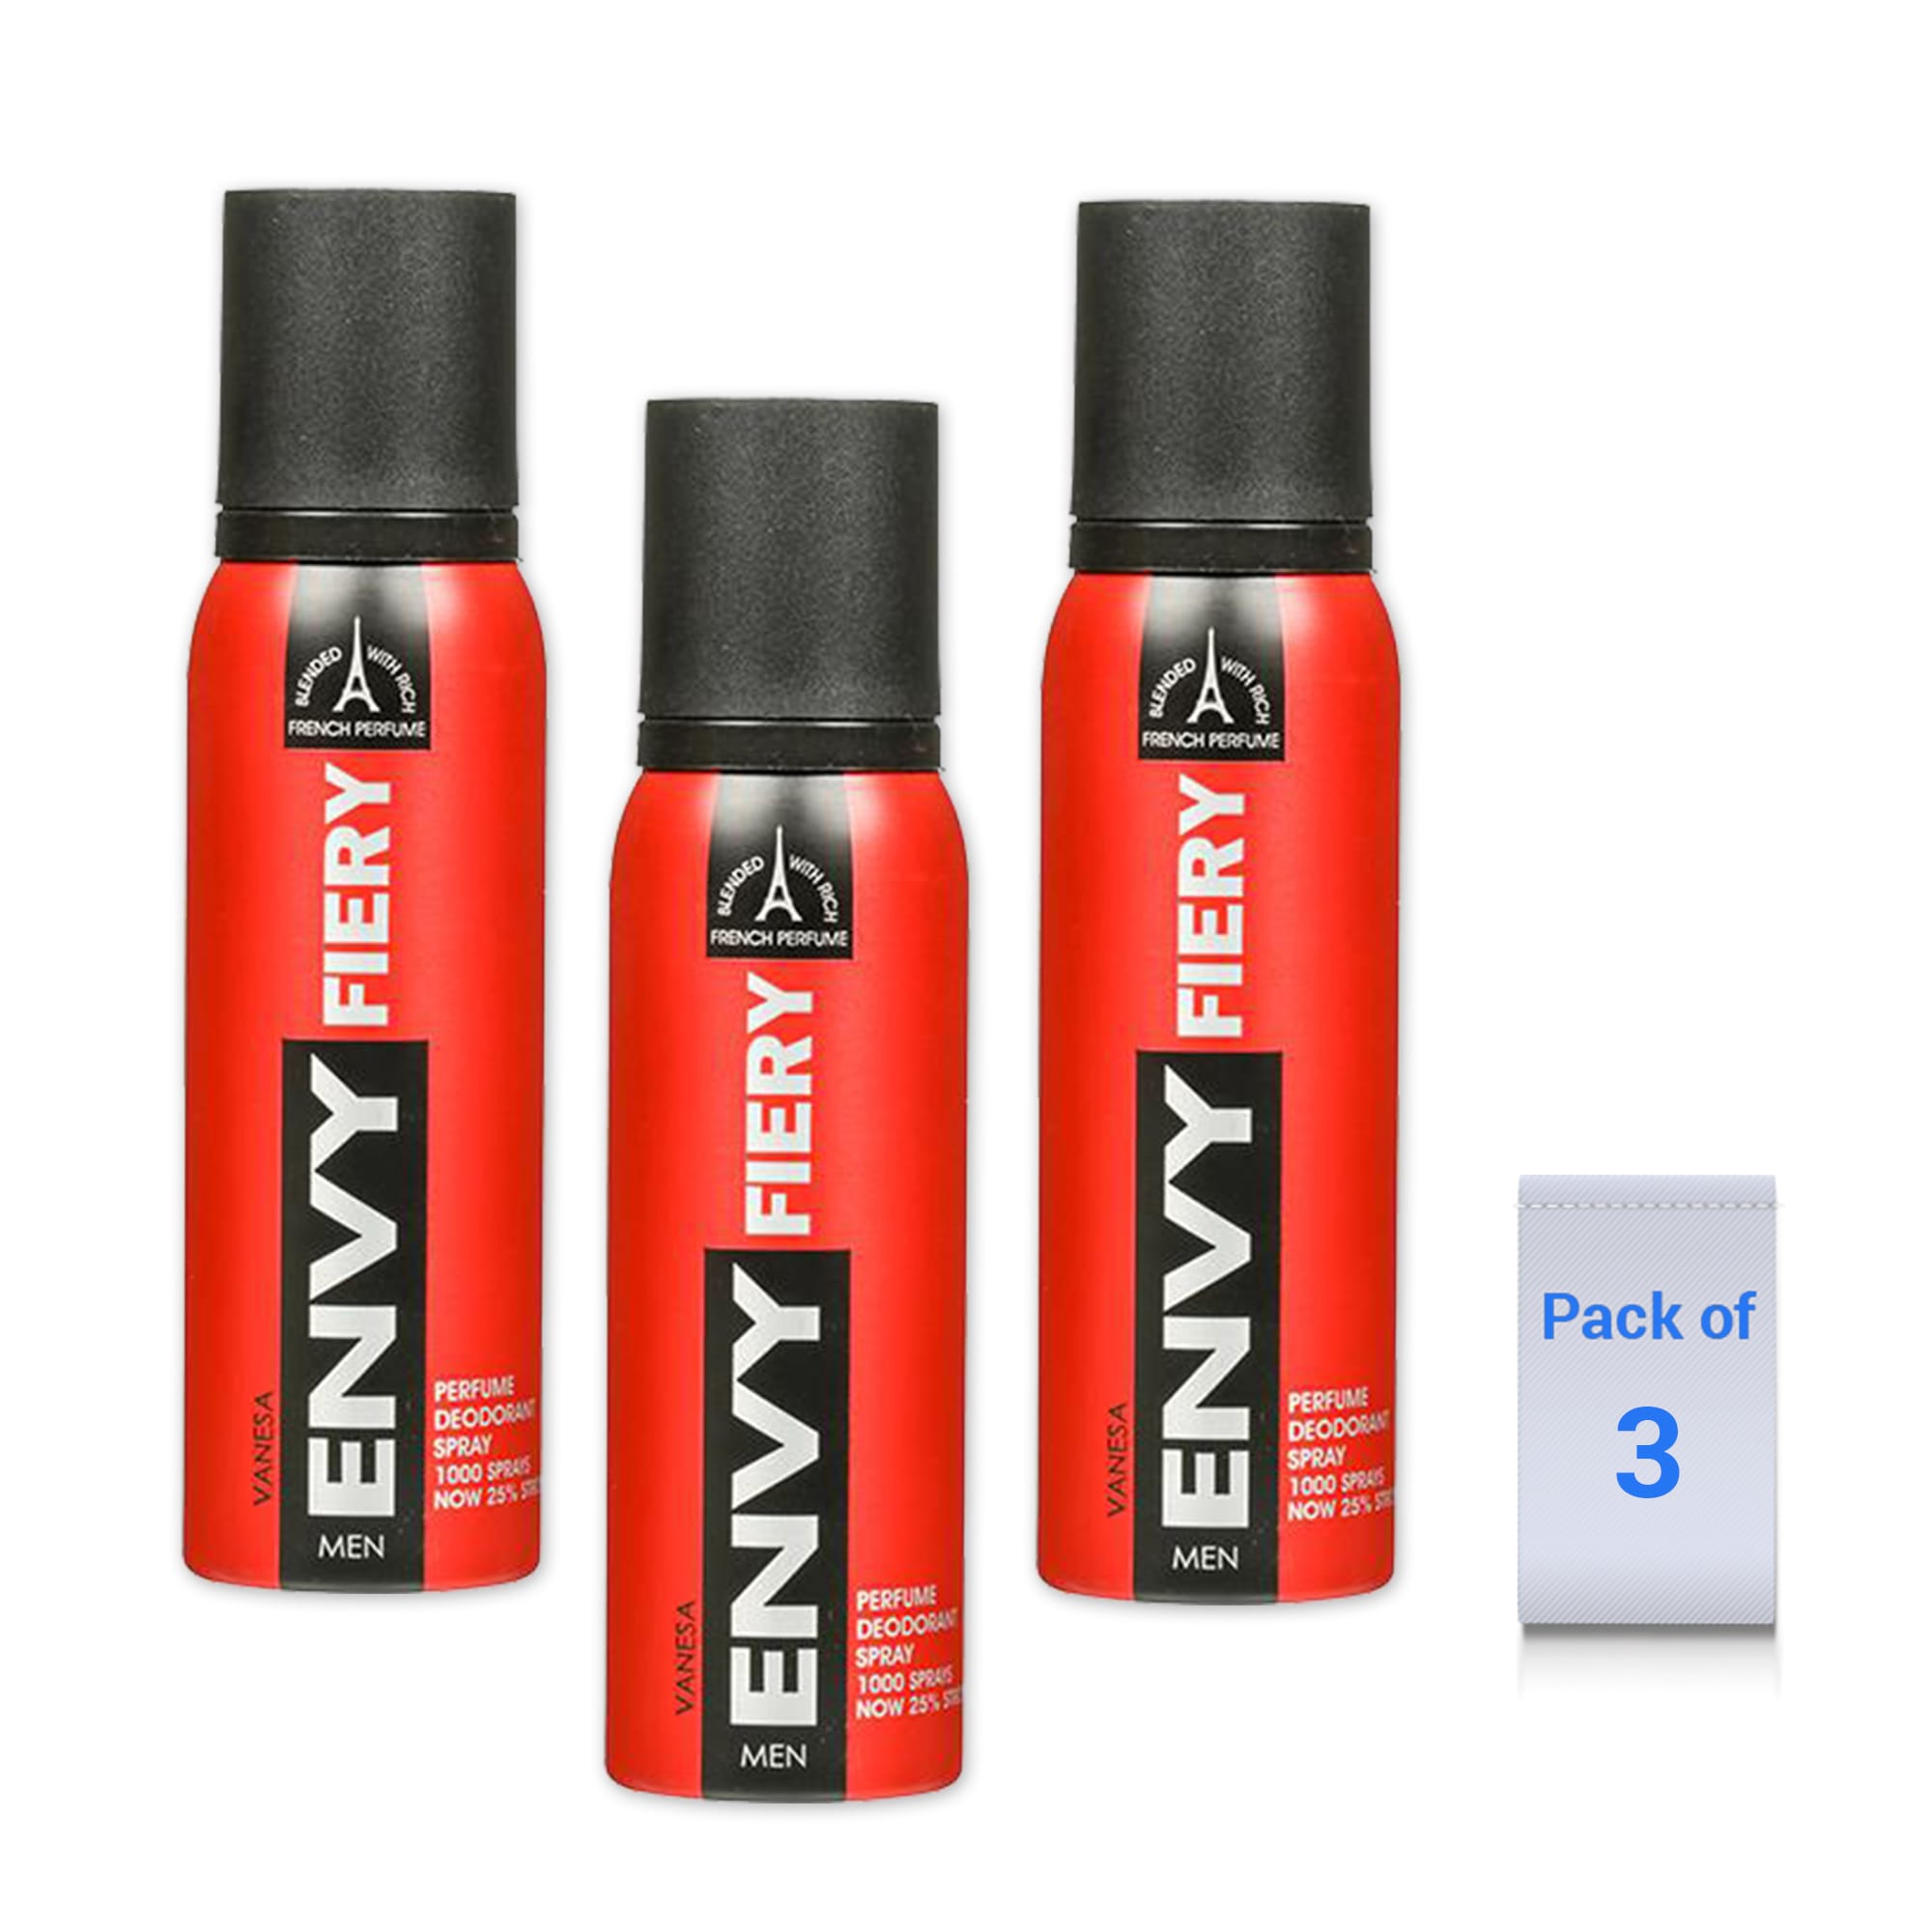 Envy Speed (Pack of 3) Deodorant Spray - For Men (360 ml)